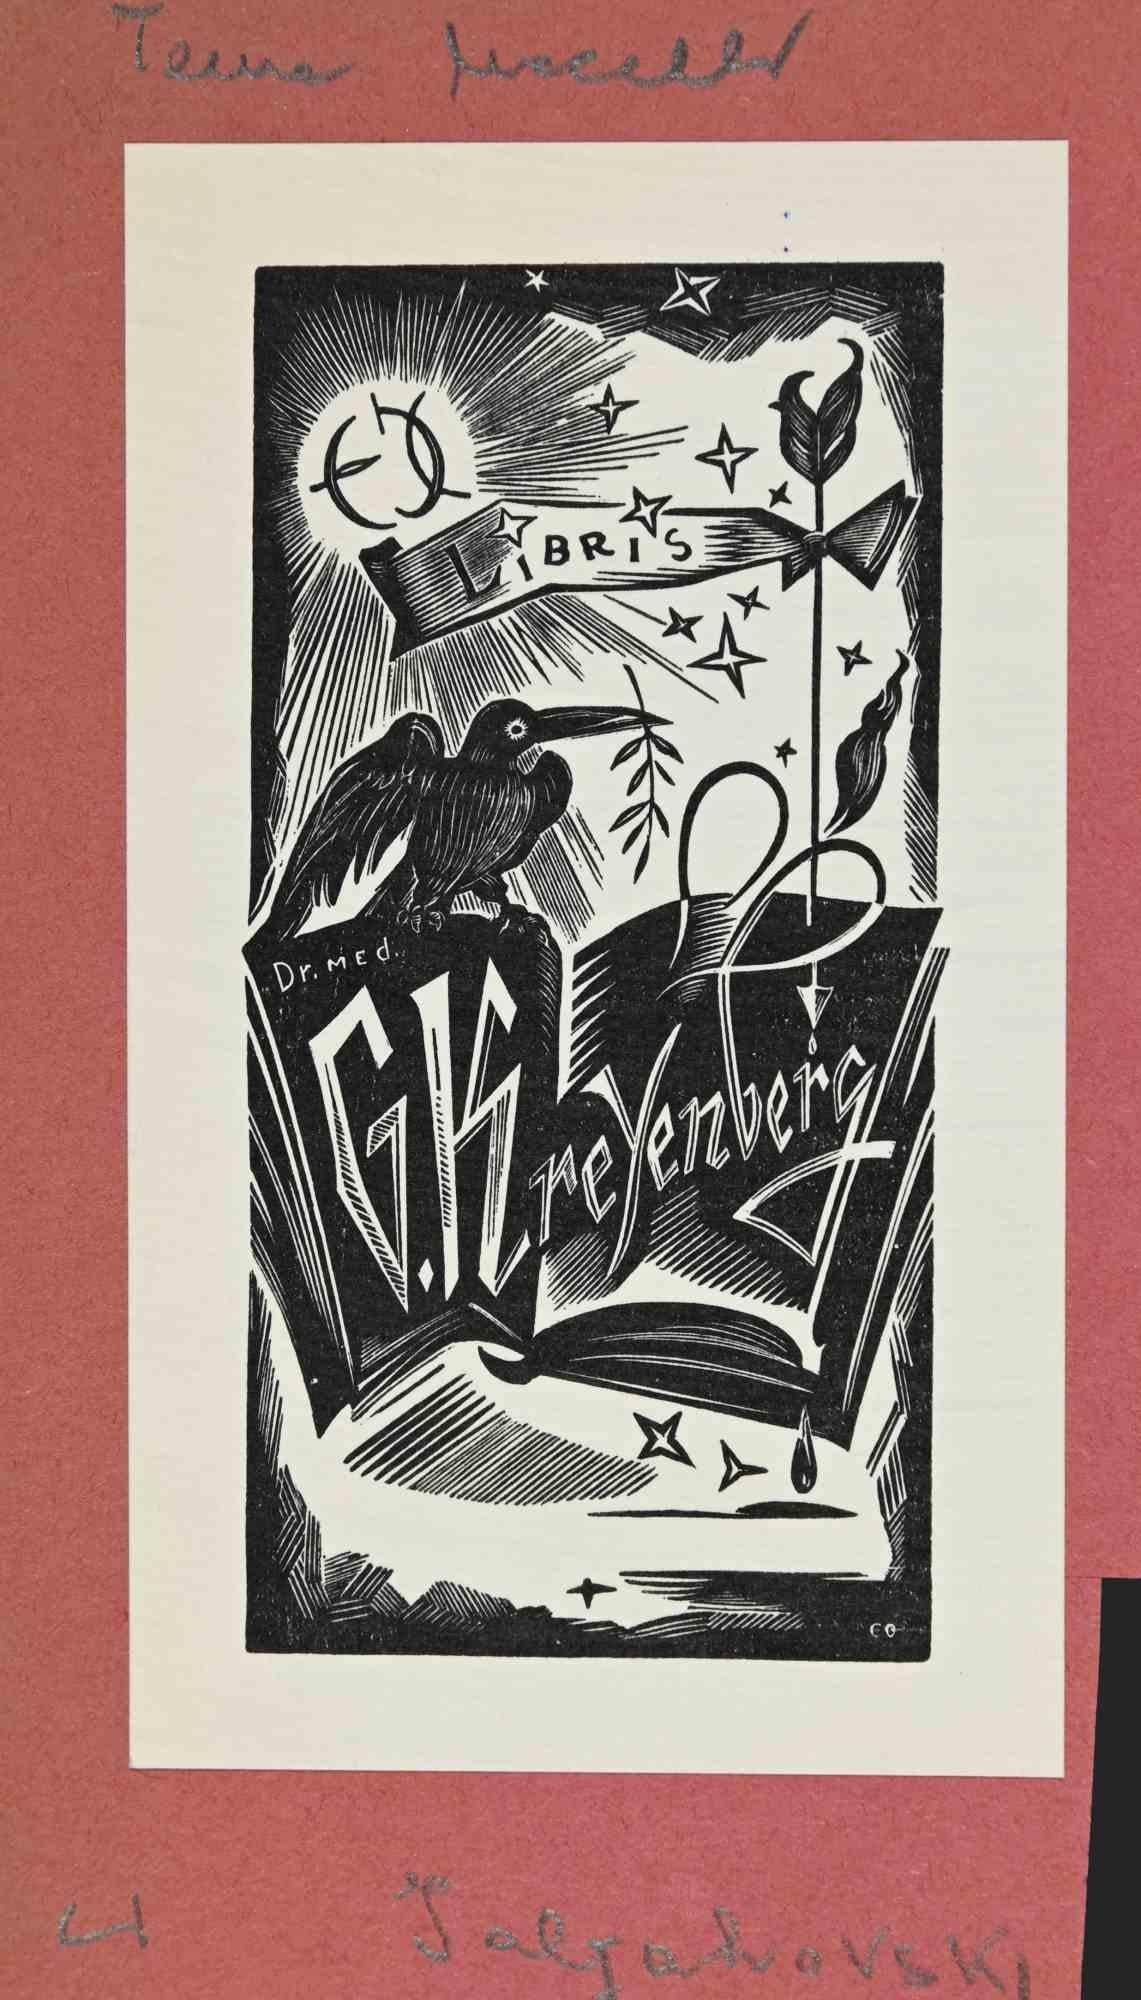 Ex libris - G. Kreyenberg ist ein Kunstwerk aus der Mitte des 20. Jahrhunderts von M. Ialyahovski.

Holzschnitt auf Elfenbeinpapier. Handsigniert auf der Rückseite. Das Werk ist auf farbigen Karton geklebt.

Abmessungen insgesamt: 17.5x10.

Gute